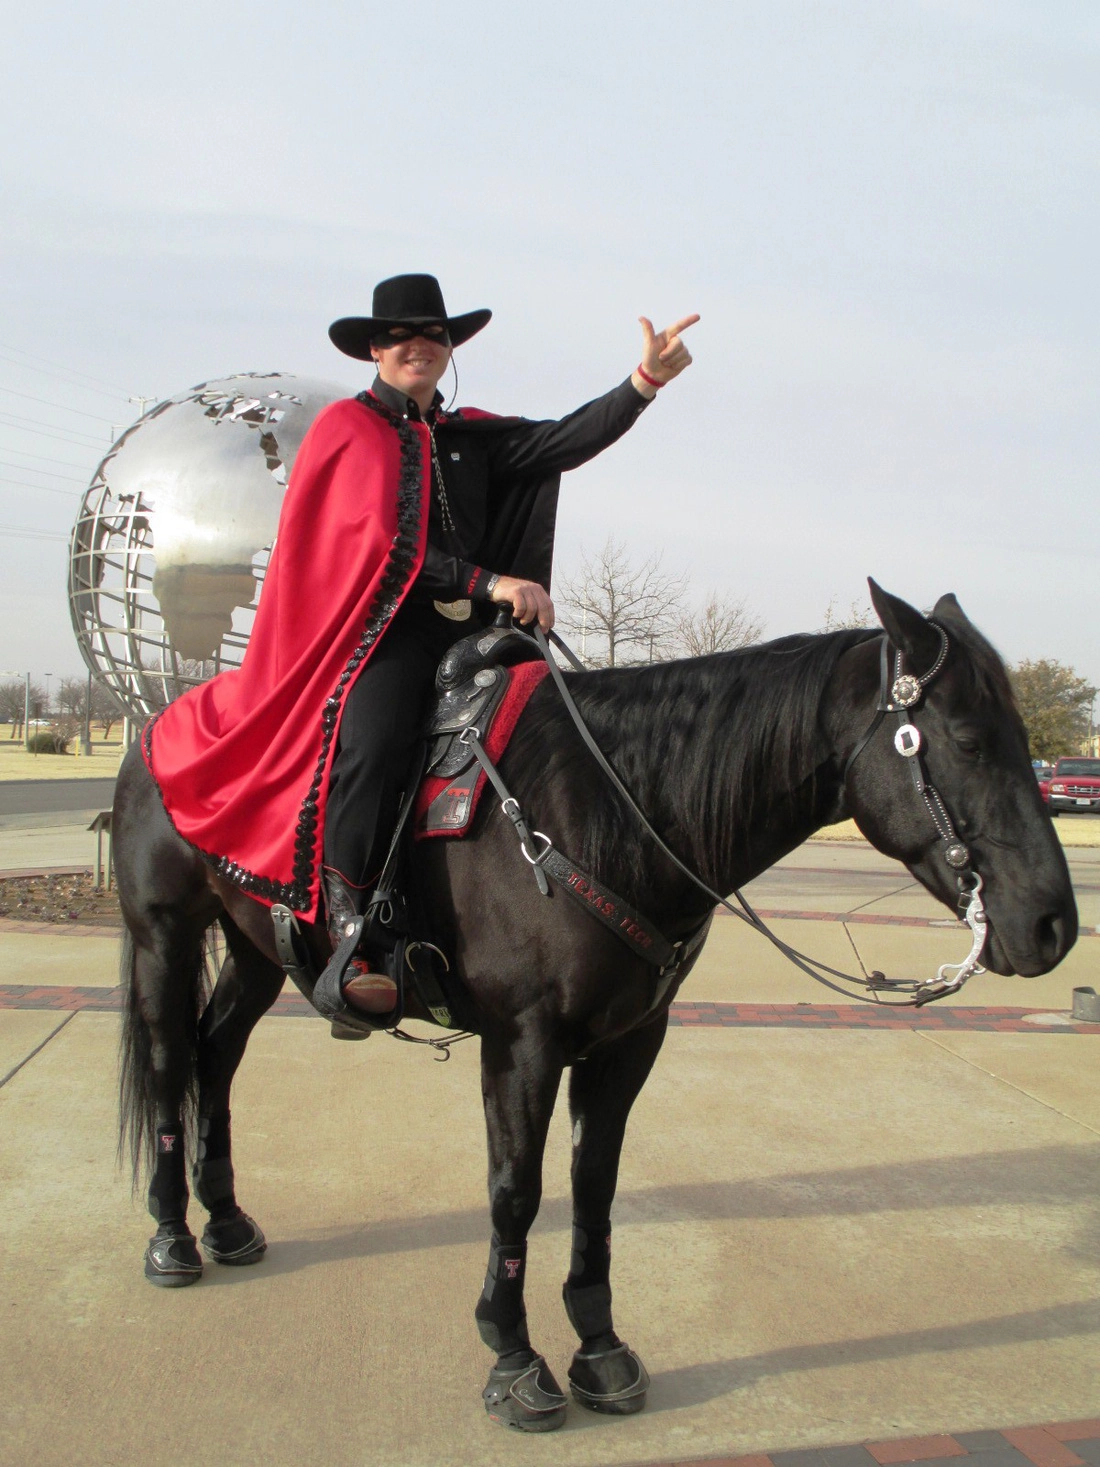 Đừng quên chụp ảnh với mascott của trường là "Kỵ sĩ đeo mặt nạ" (The Masked Rider) nếu may mắn bắt gặp!